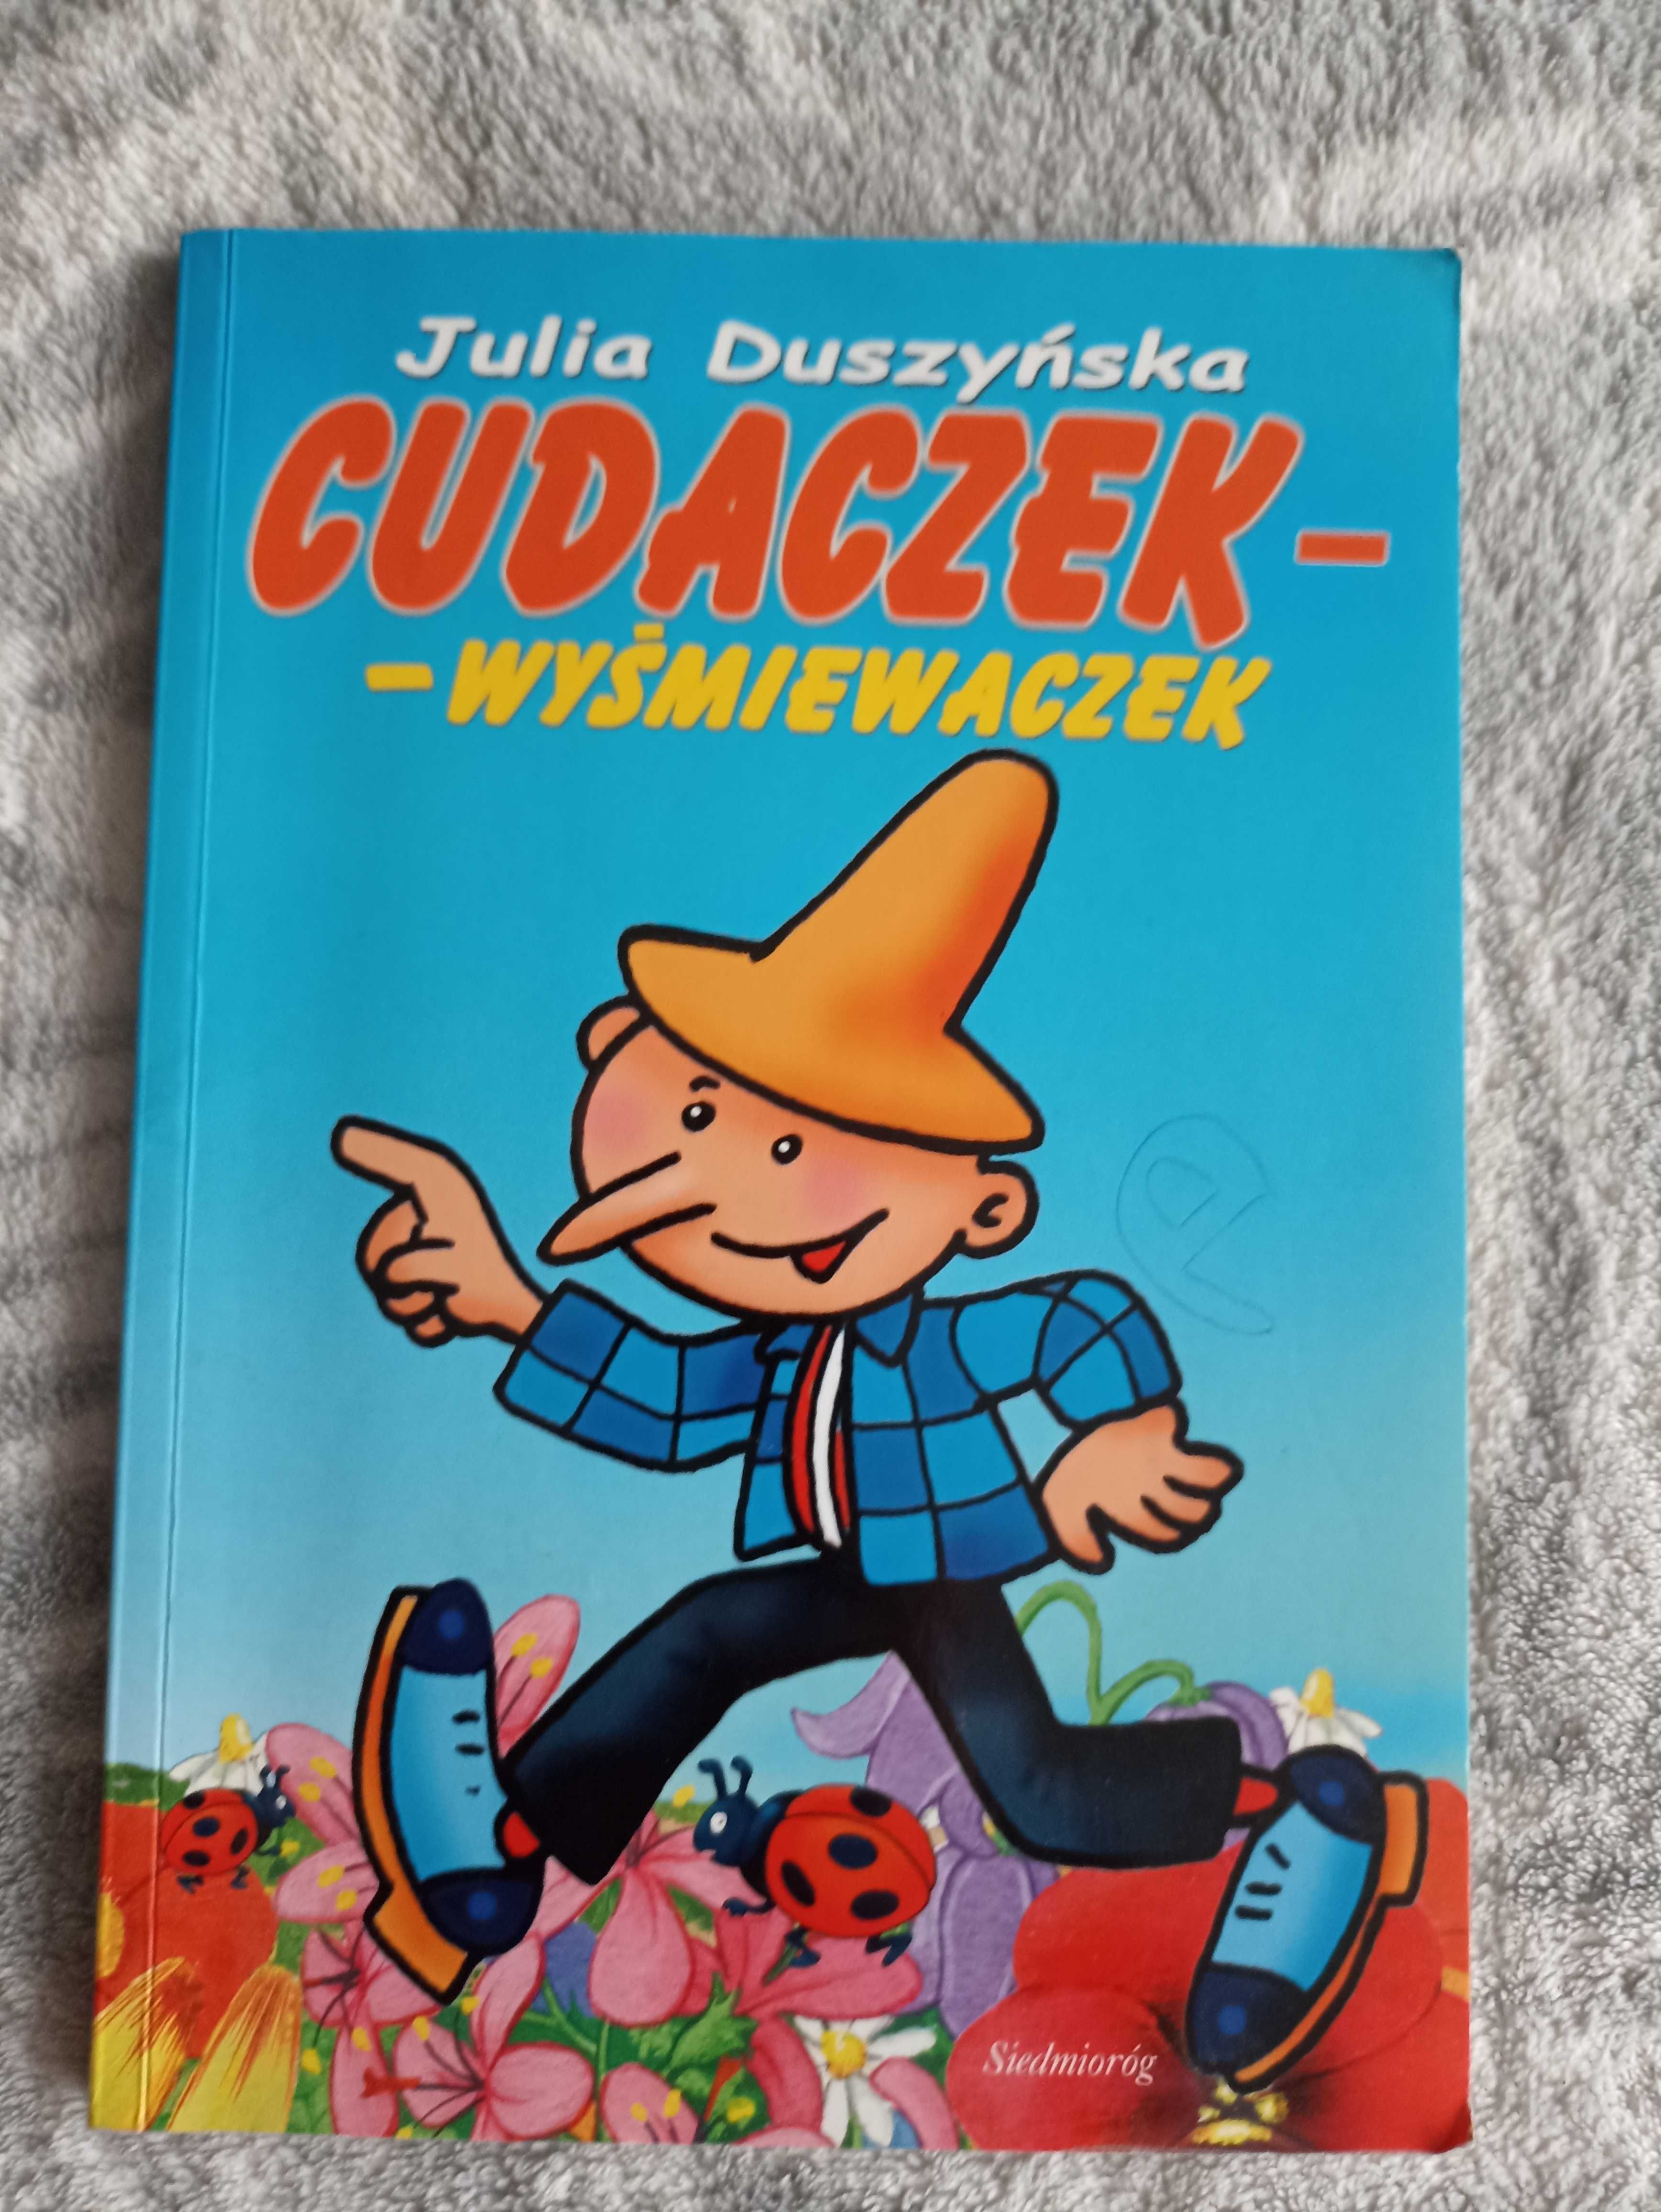 książka "Cudaczek - wyśmiewaczek" J. Duszyńska lektura